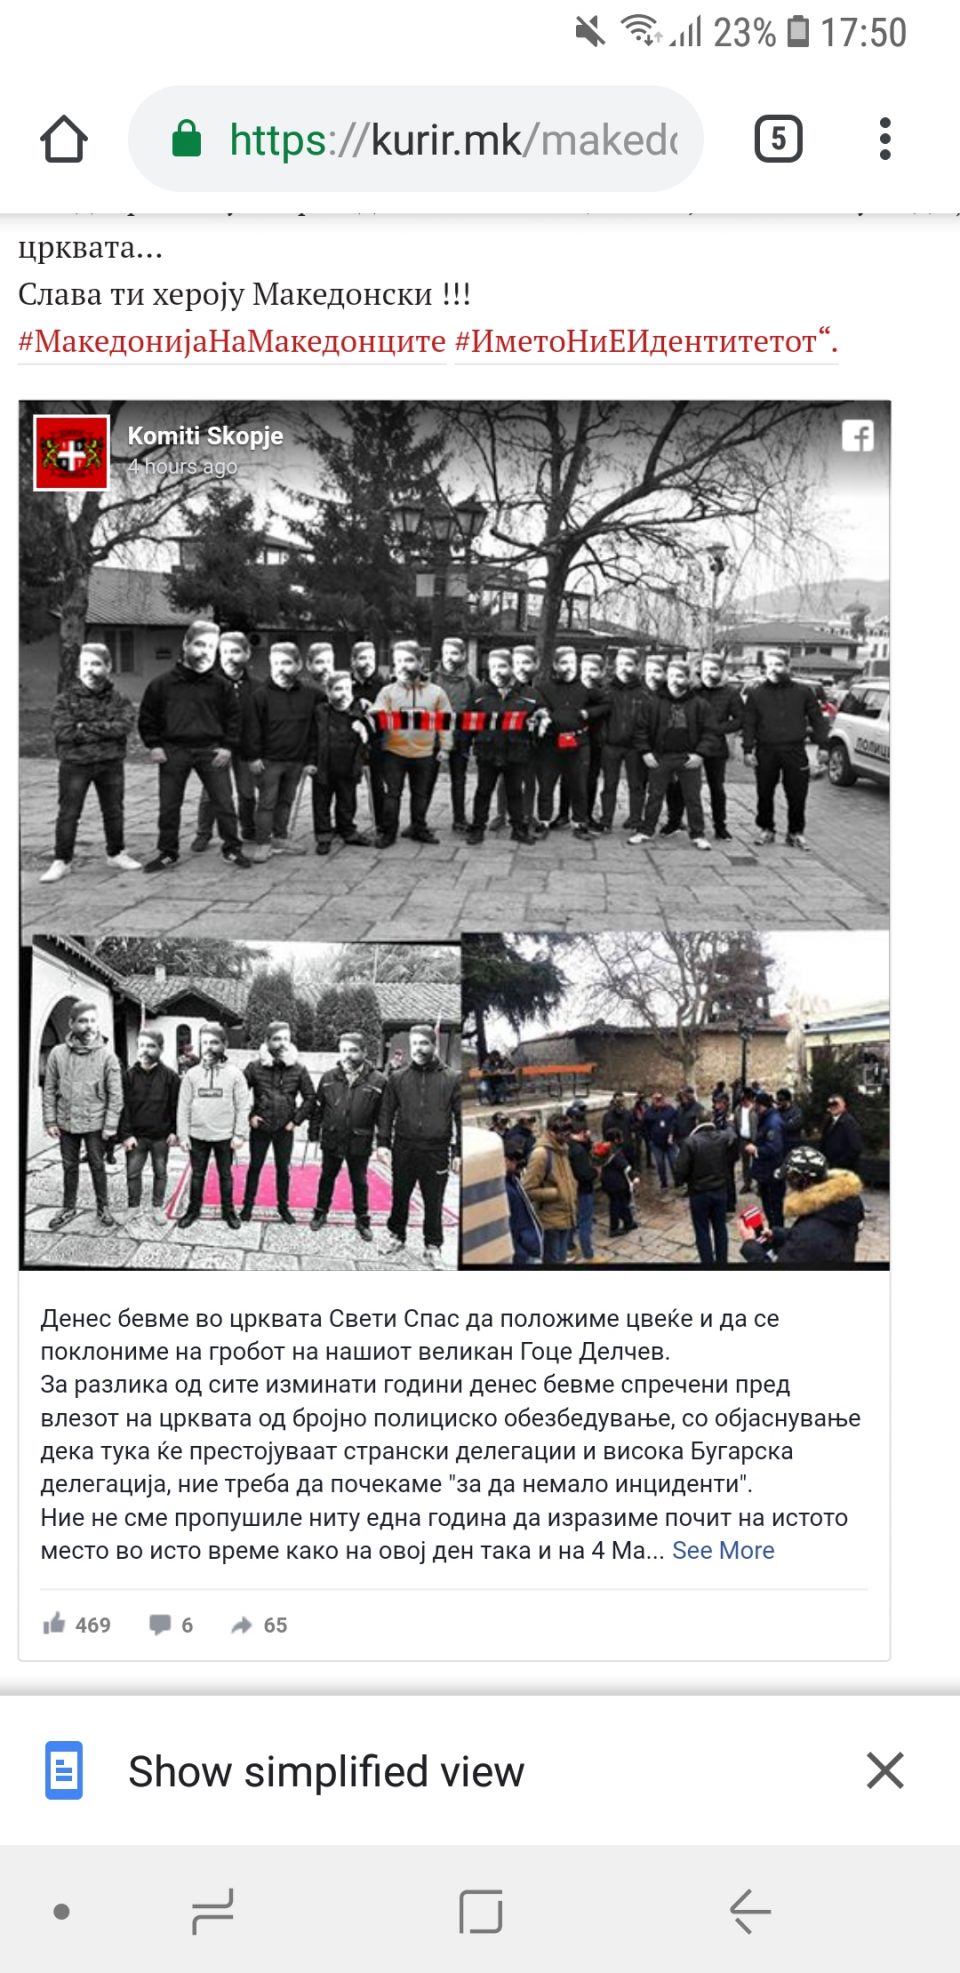 Комити Скопје спречени да положат цвеќе и да се поклонат на гробот на Гоце Делчев